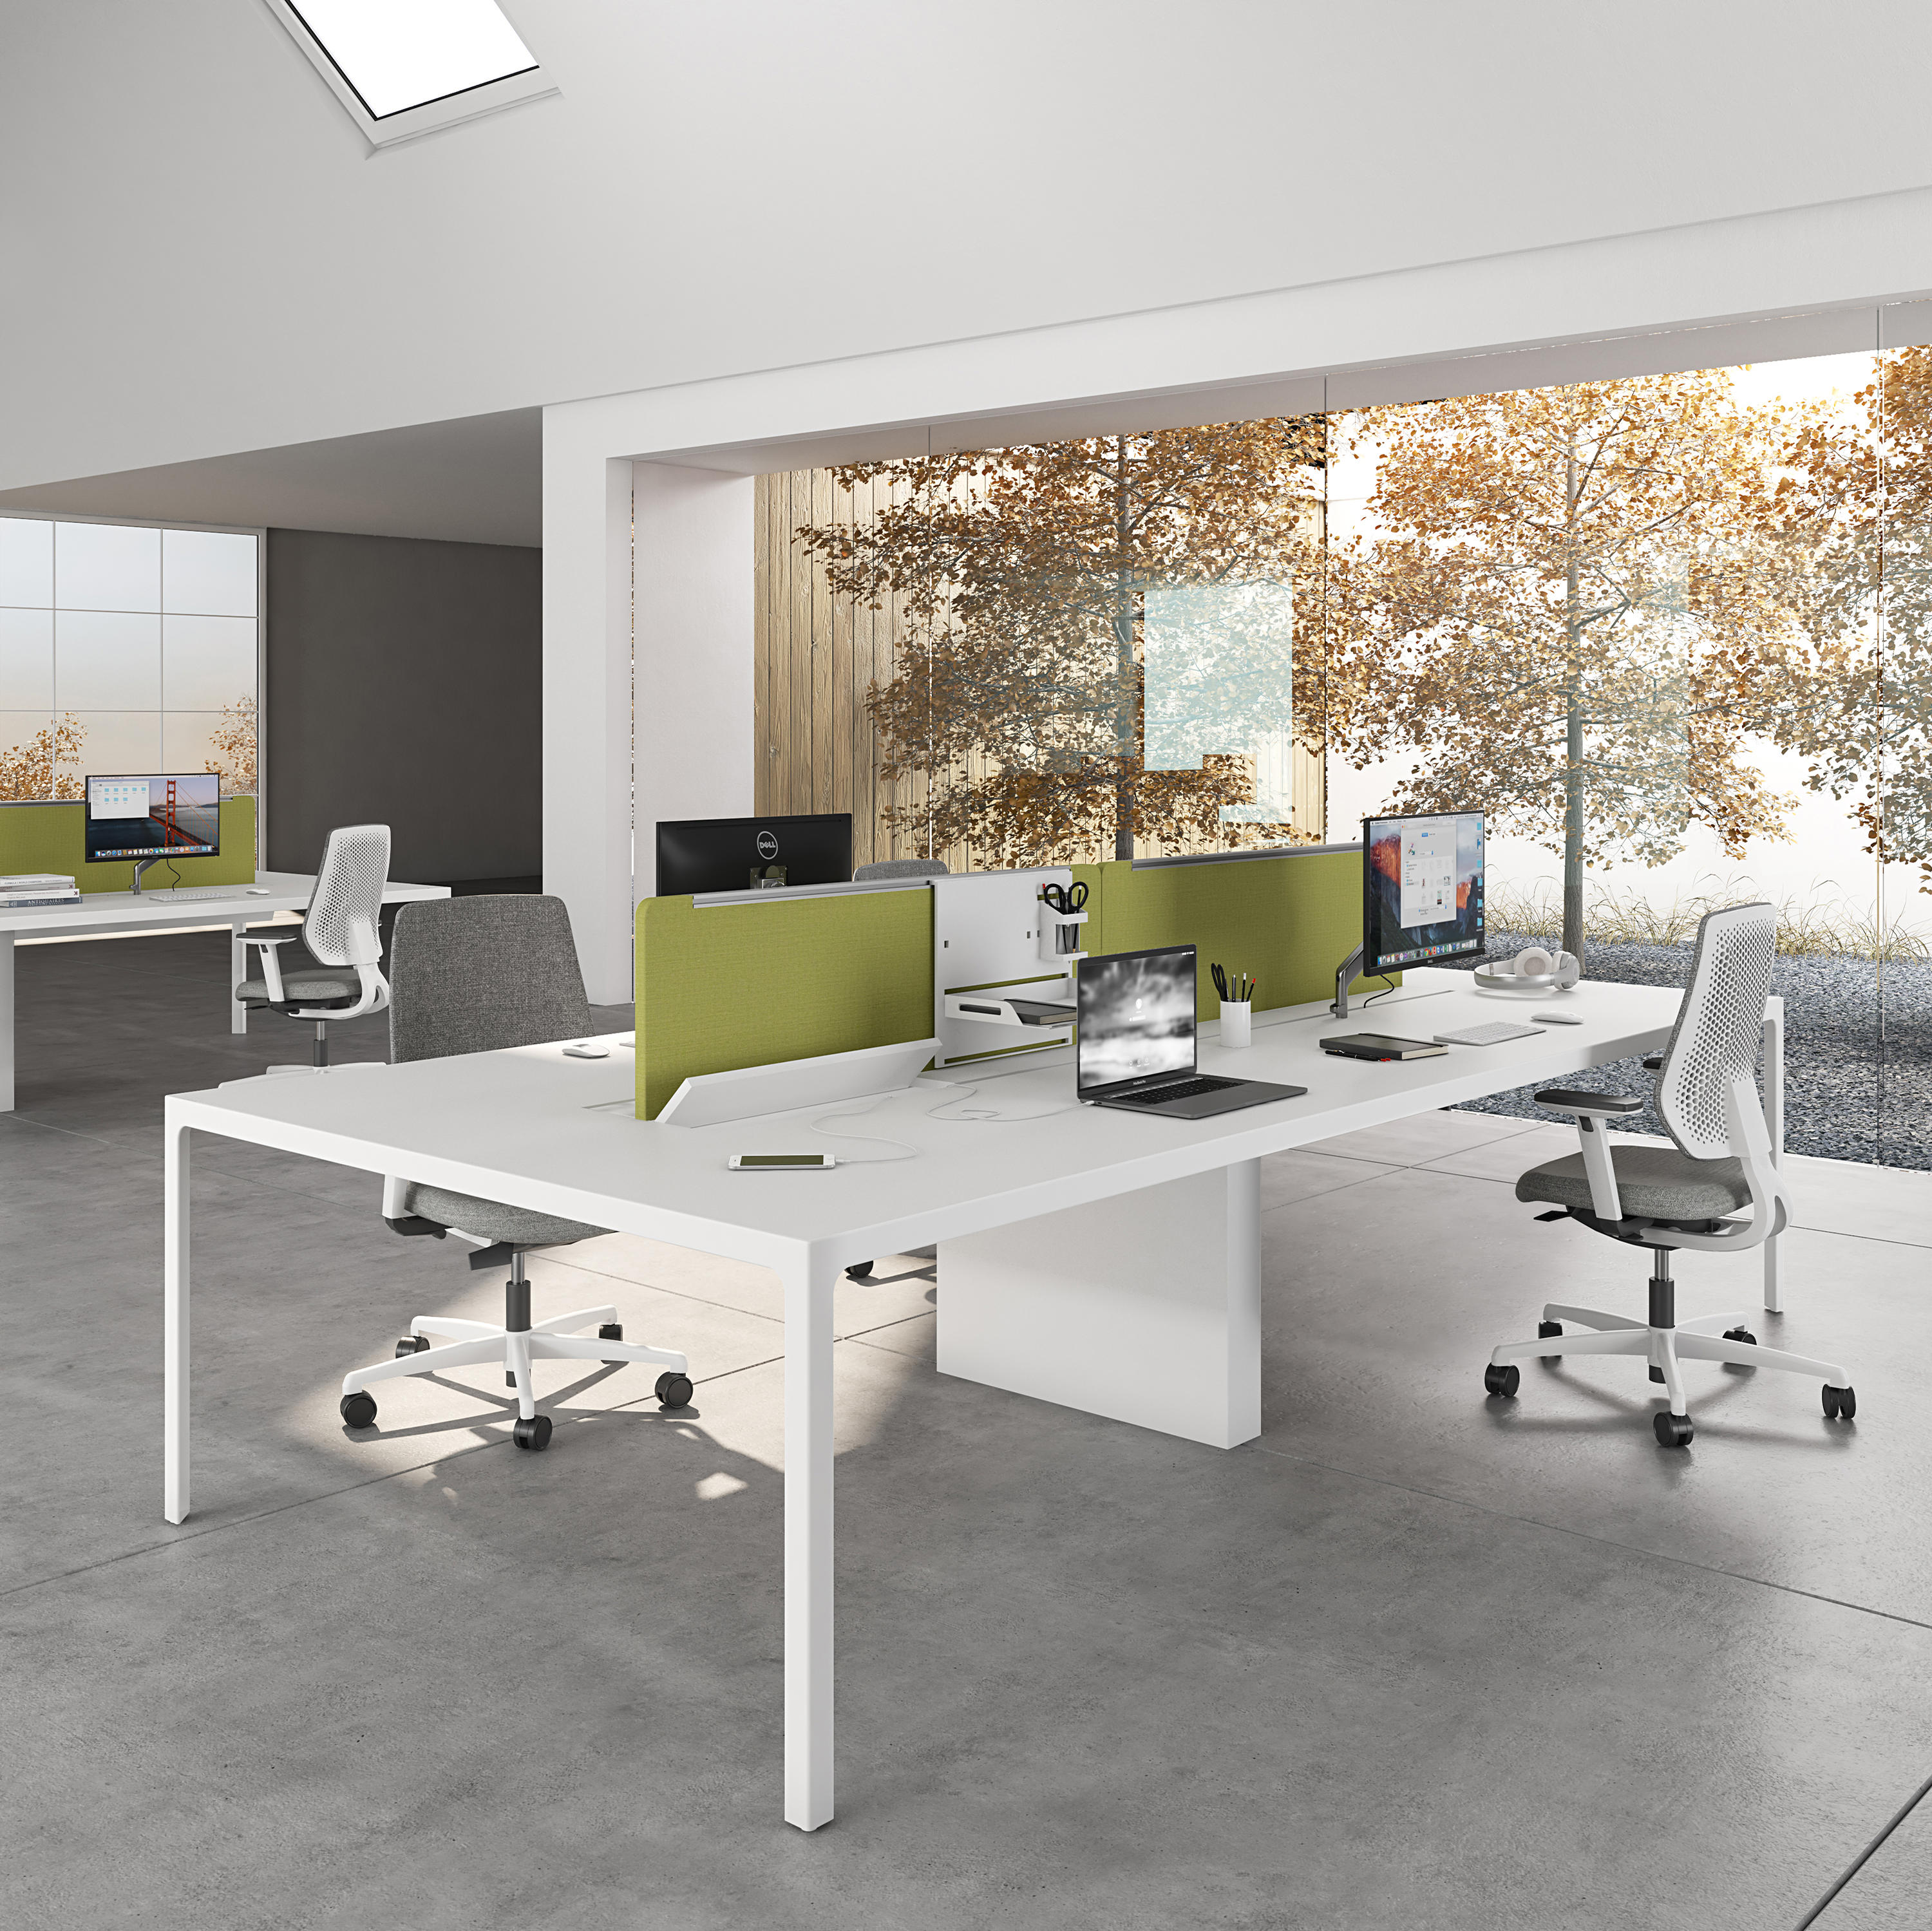 More Single Desk Designer Furniture Architonic